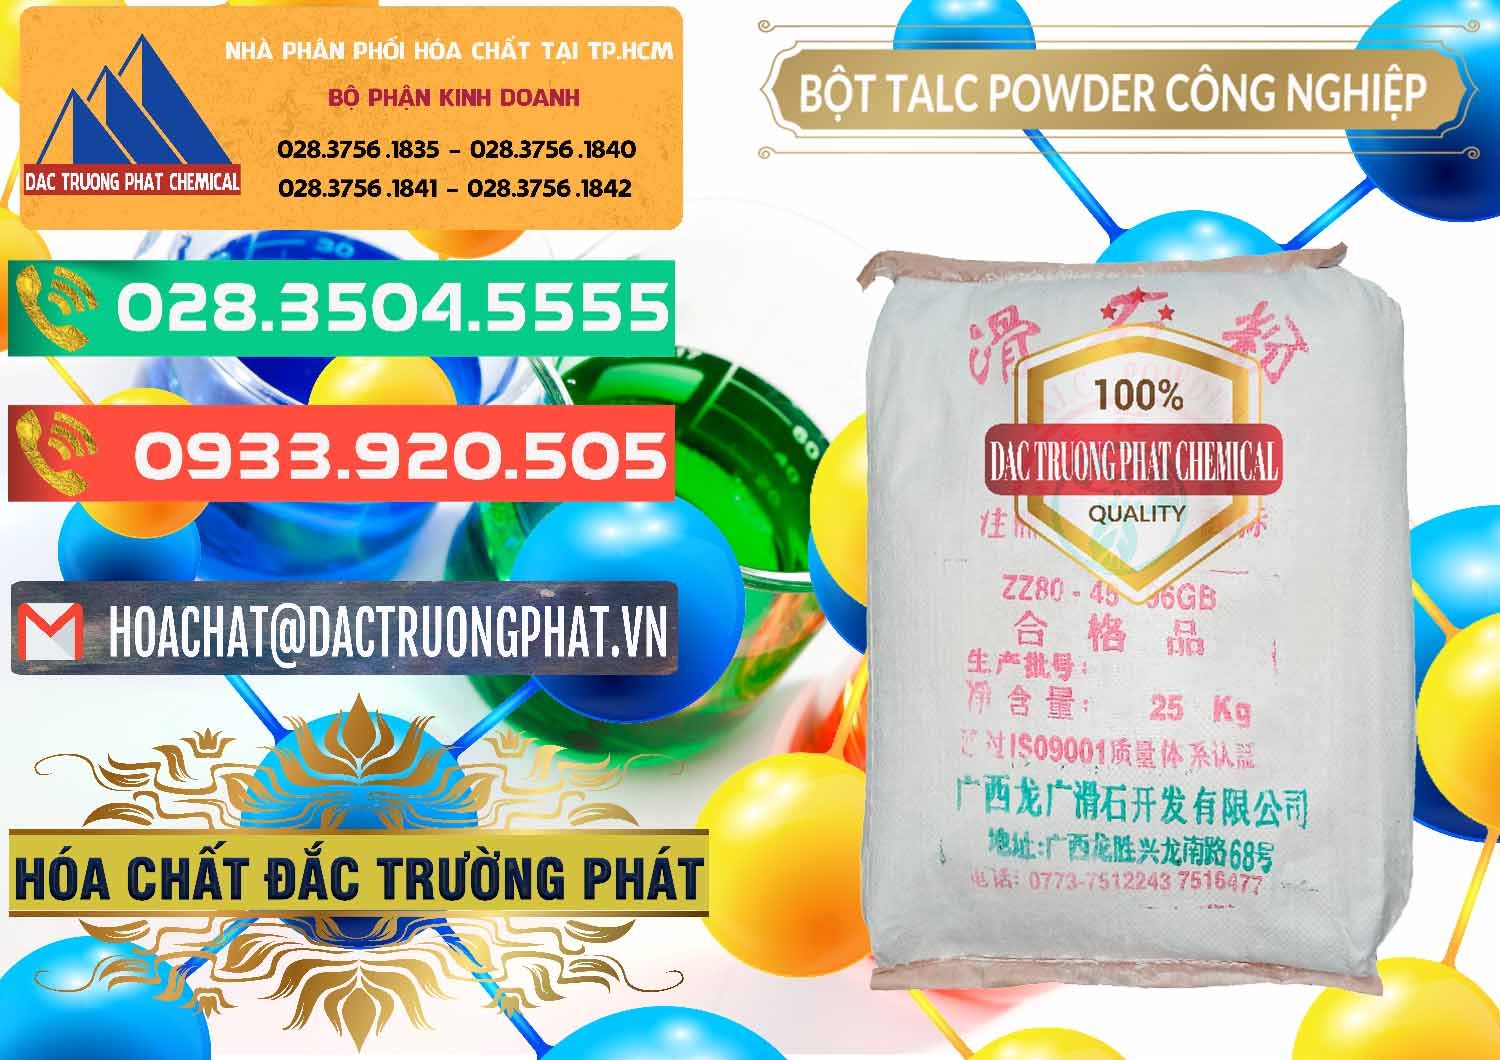 Nơi chuyên cung ứng và bán Bột Talc Powder Công Nghiệp Trung Quốc China - 0037 - Nơi bán và cung cấp hóa chất tại TP.HCM - congtyhoachat.com.vn